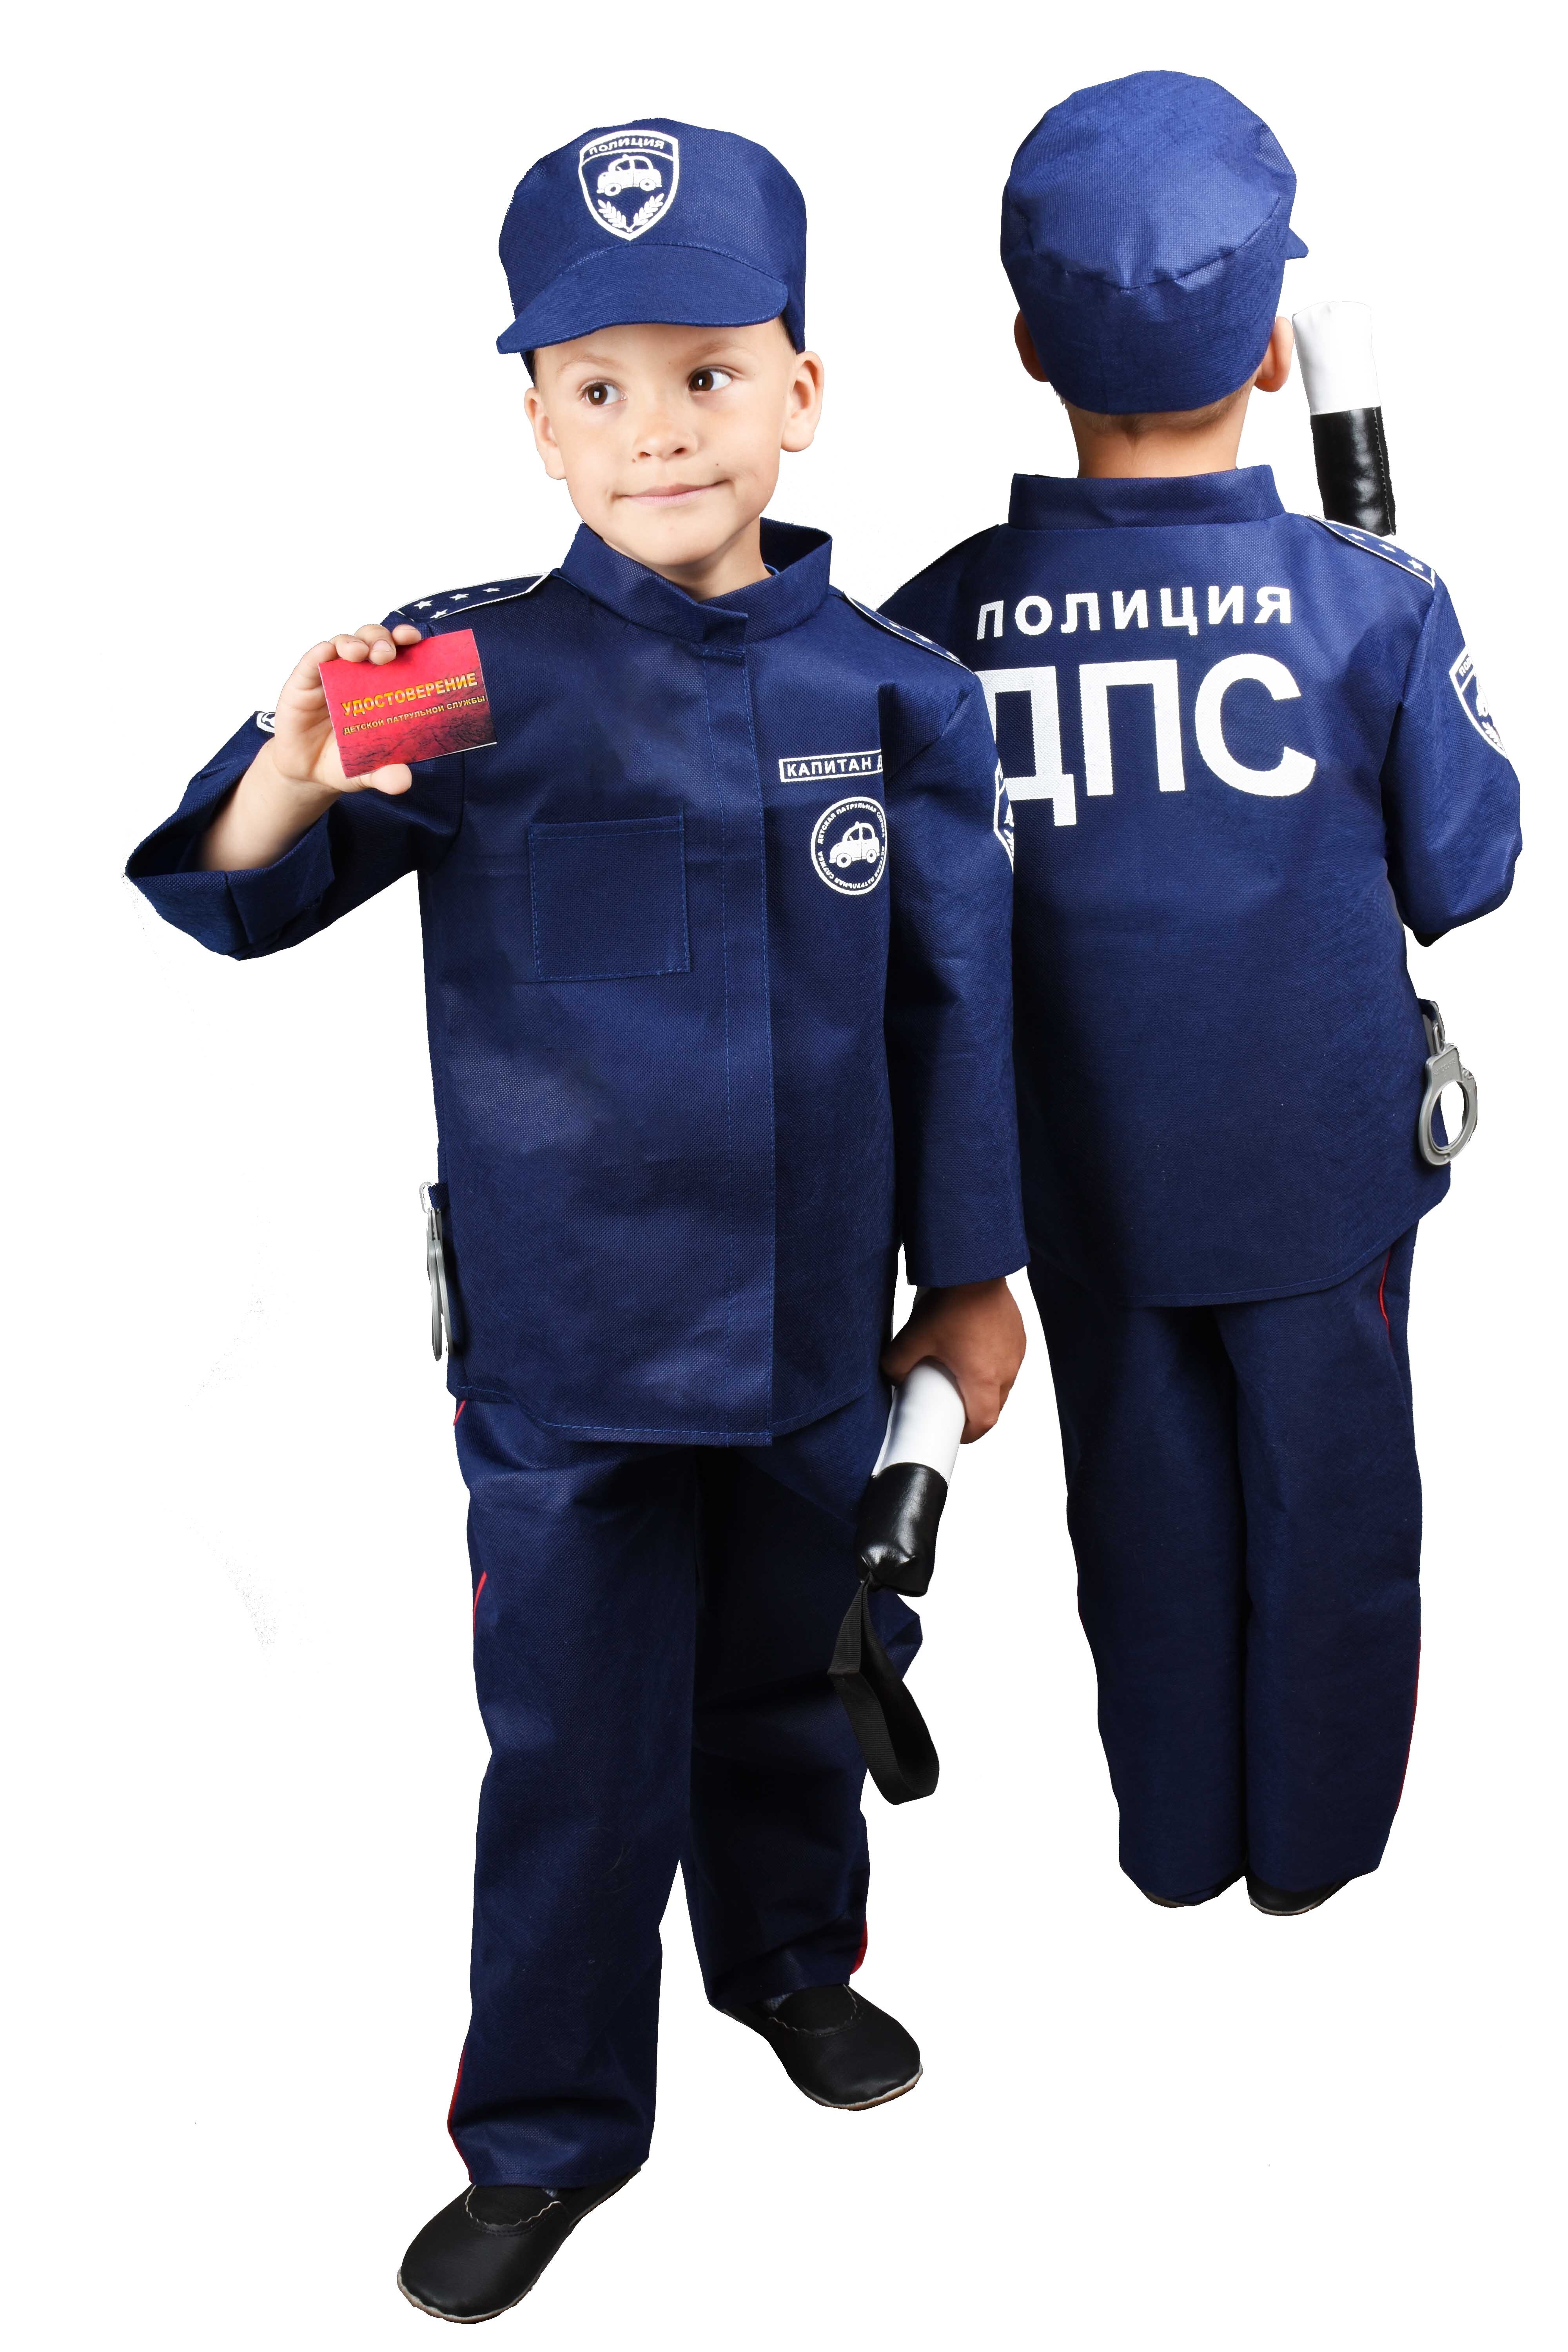 Купить форму дпс. Костюм полицейского для детей. Детский костюм ДПС. Полицейский набор для детей. Костюм гаишника детский.